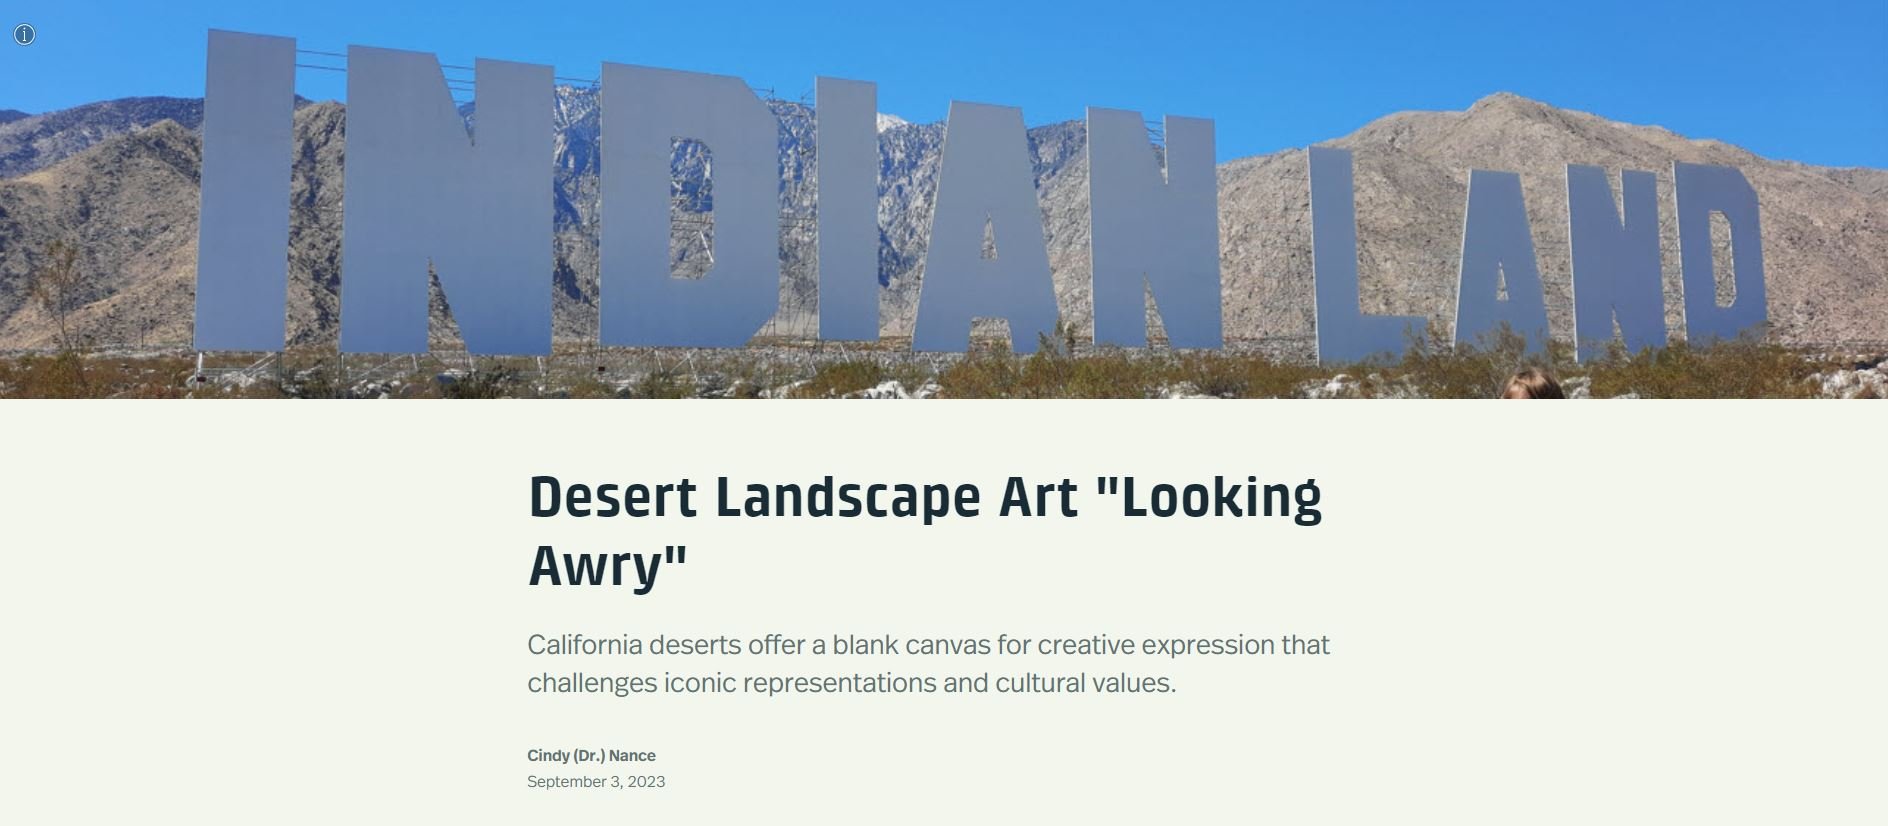 Desert Landscape Art "Looking Awry" - Dr. Cindy Nance